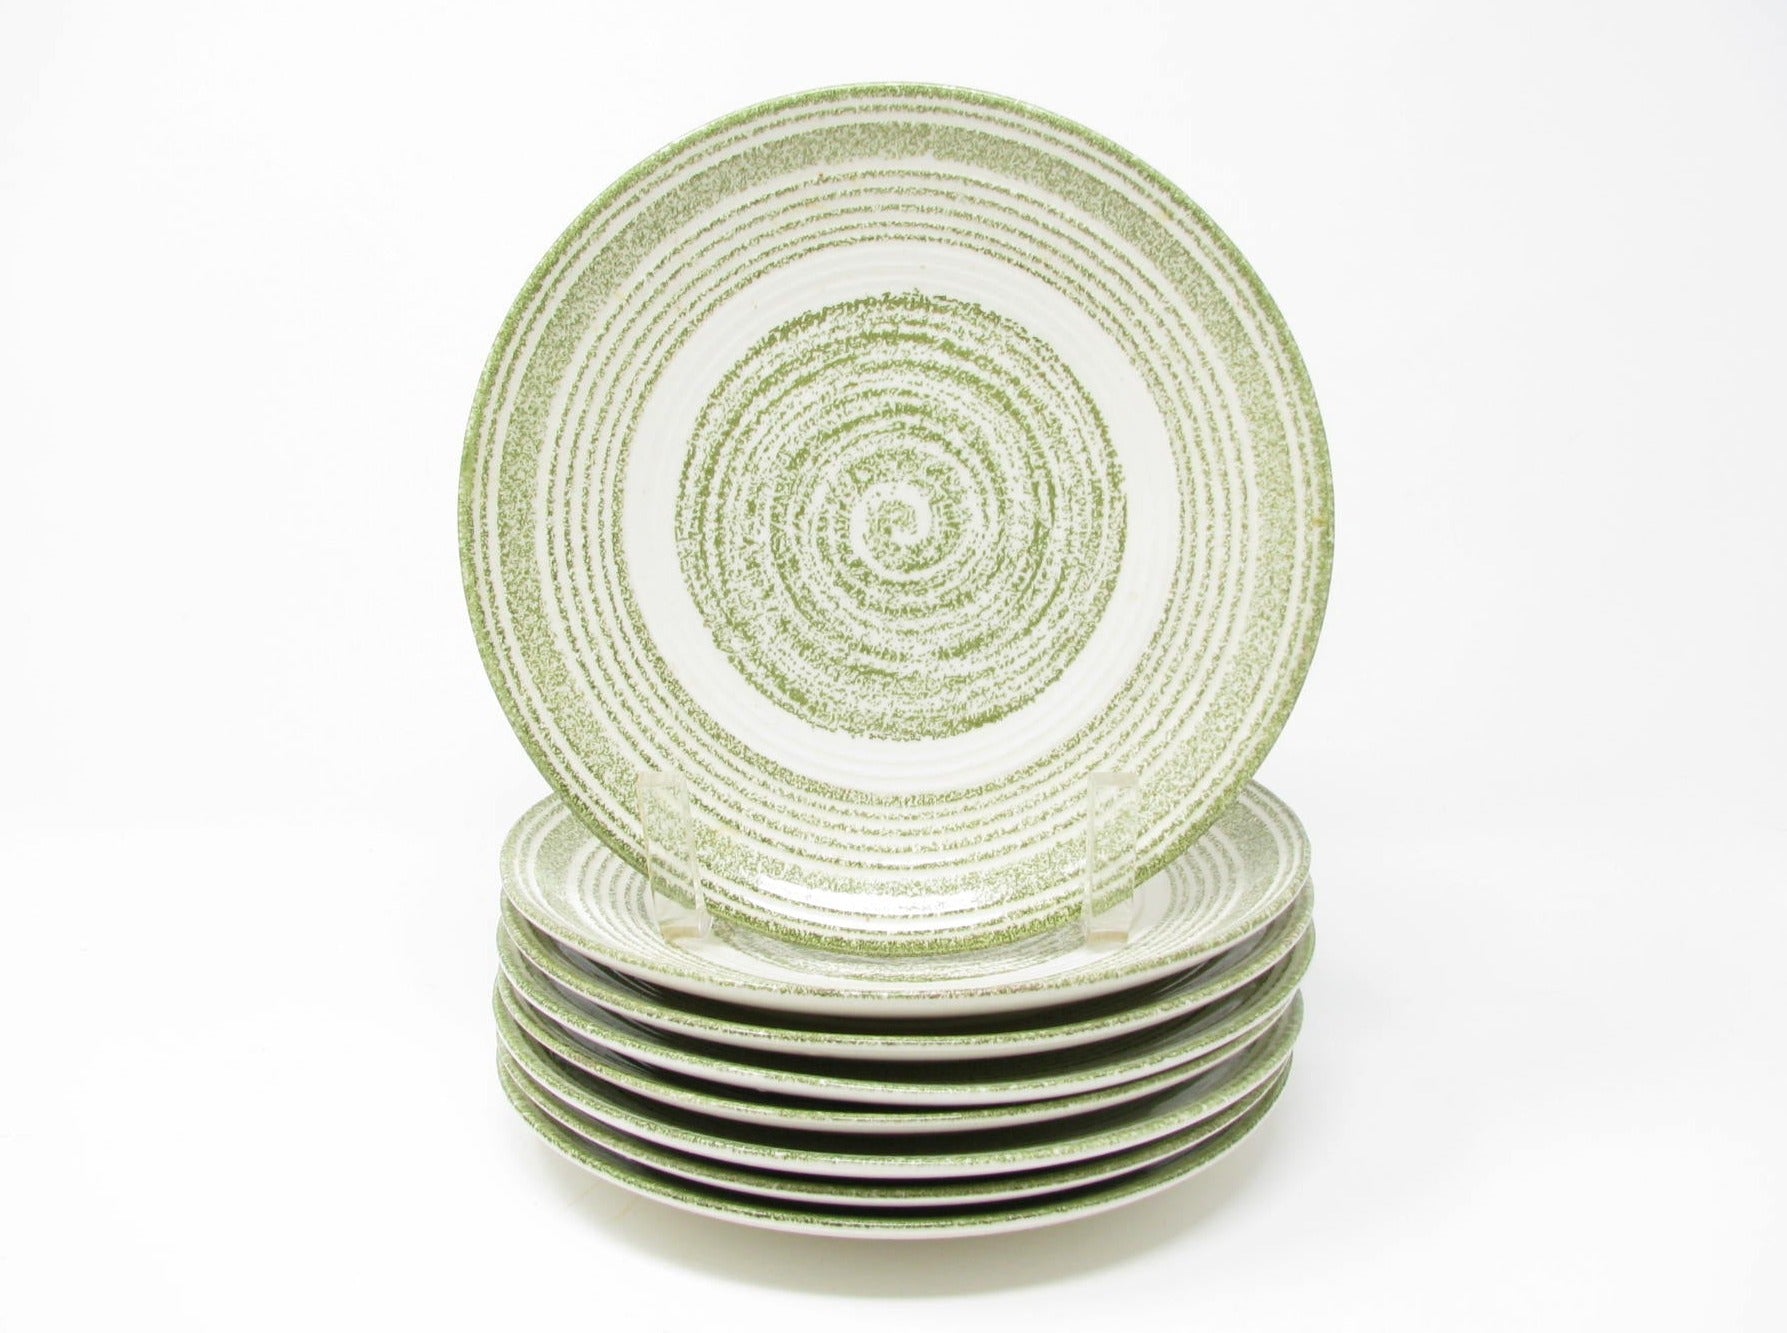 Vintage Max Schonfeld El Verde Salad Plates with Green Concentric Circle Design - 10 Pieces